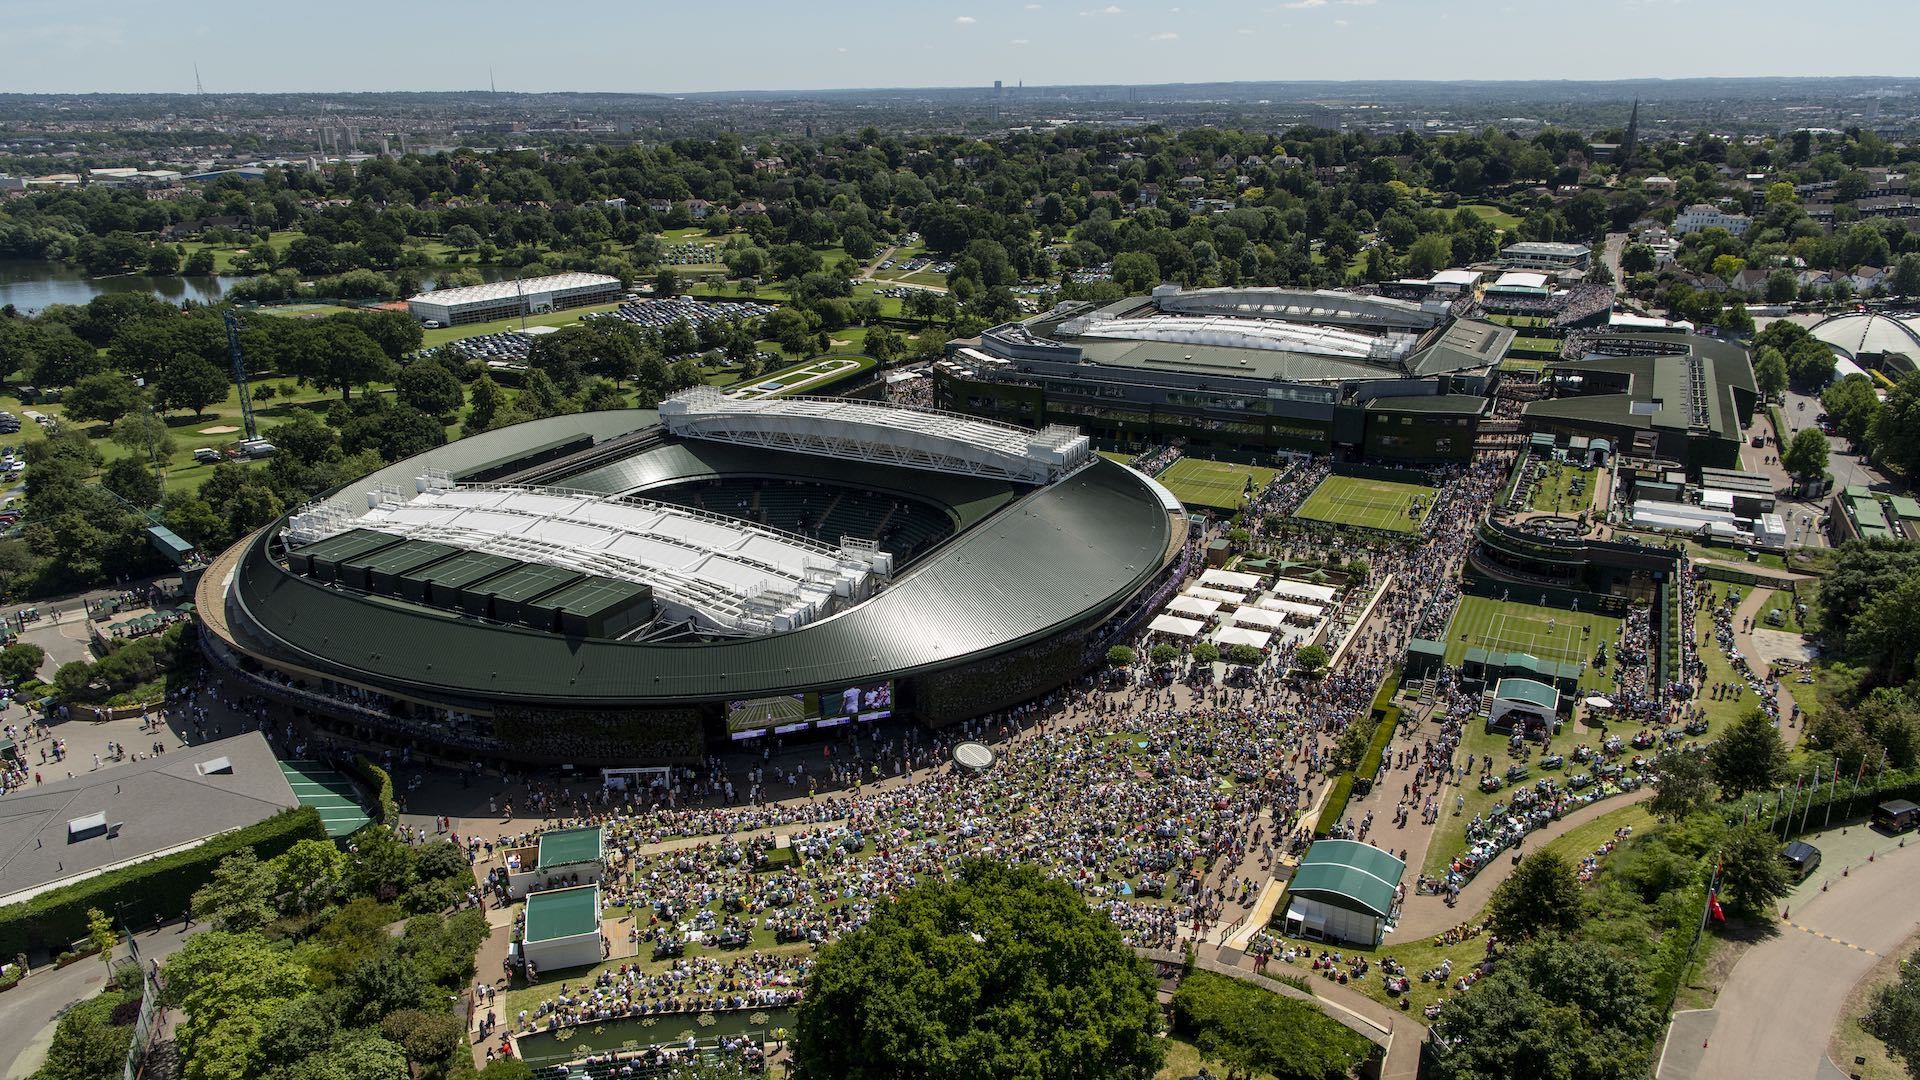 Best Shots of Wimbledon 2021 